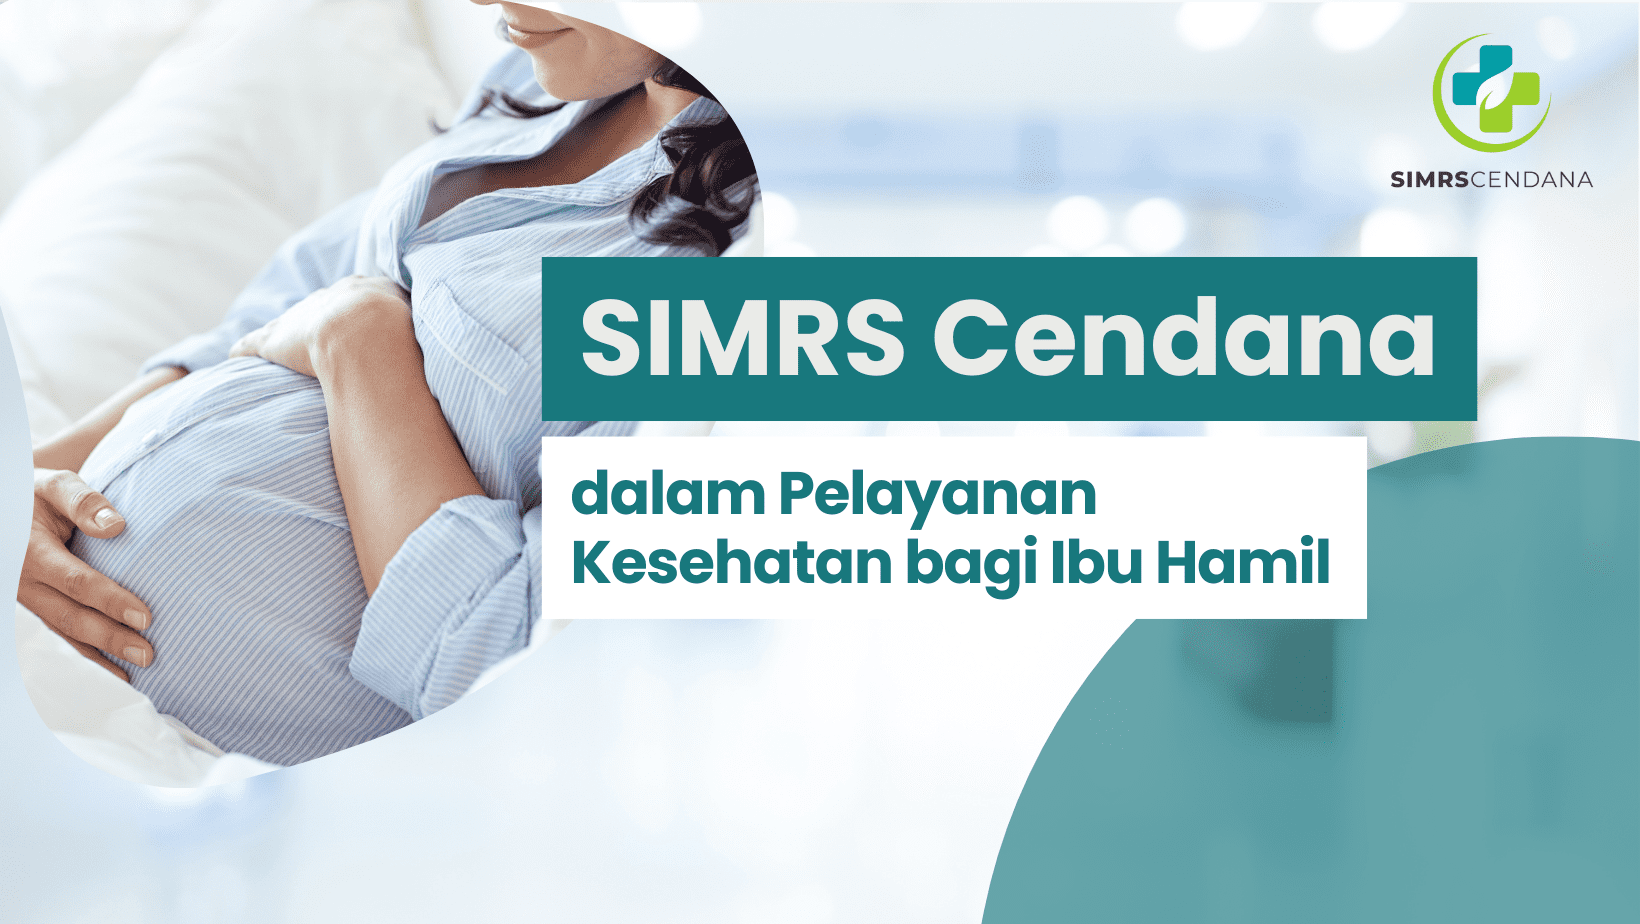 SIMRS Cendana dalam Pelayanan Kesehatan Bagi Ibu Hamil